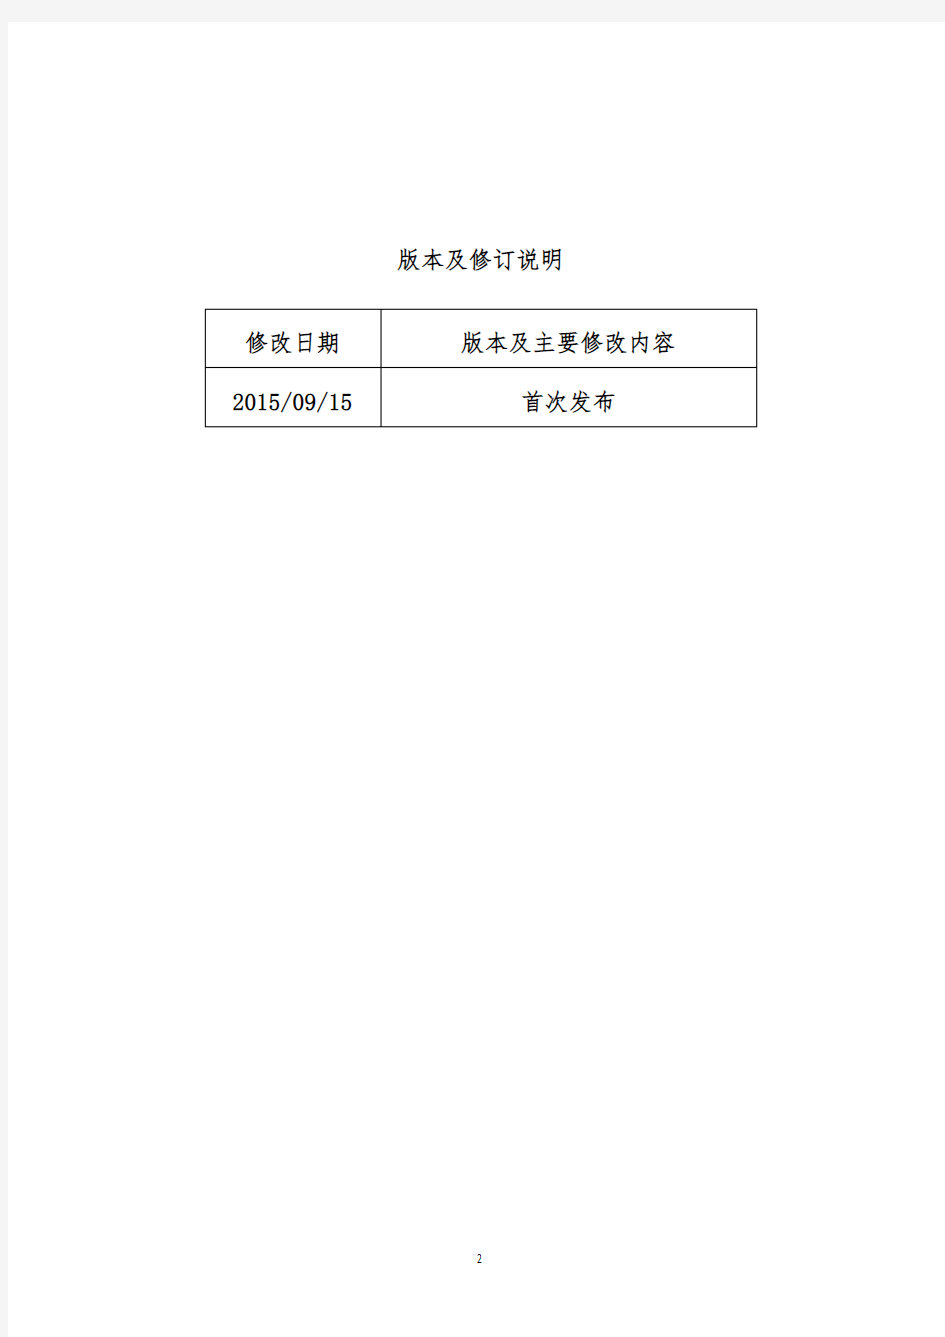 上海证券交易所公司债券预审核指南(一)申请文件及编制 0915